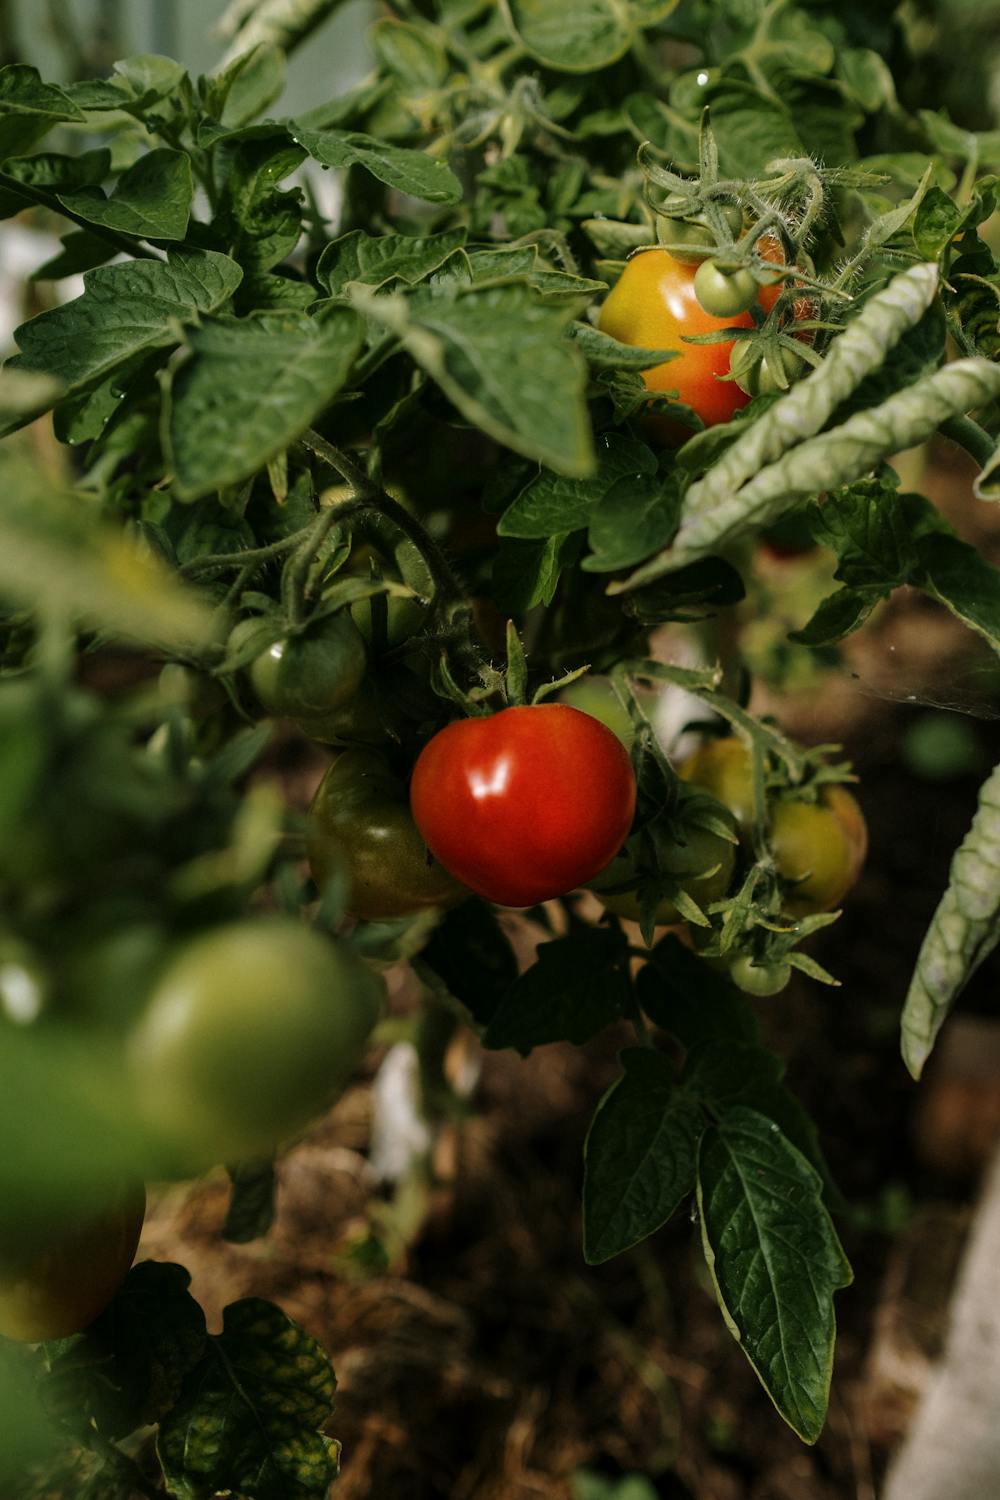 Determinate Tomato Plants vs. Indeterminate Tomato Plants